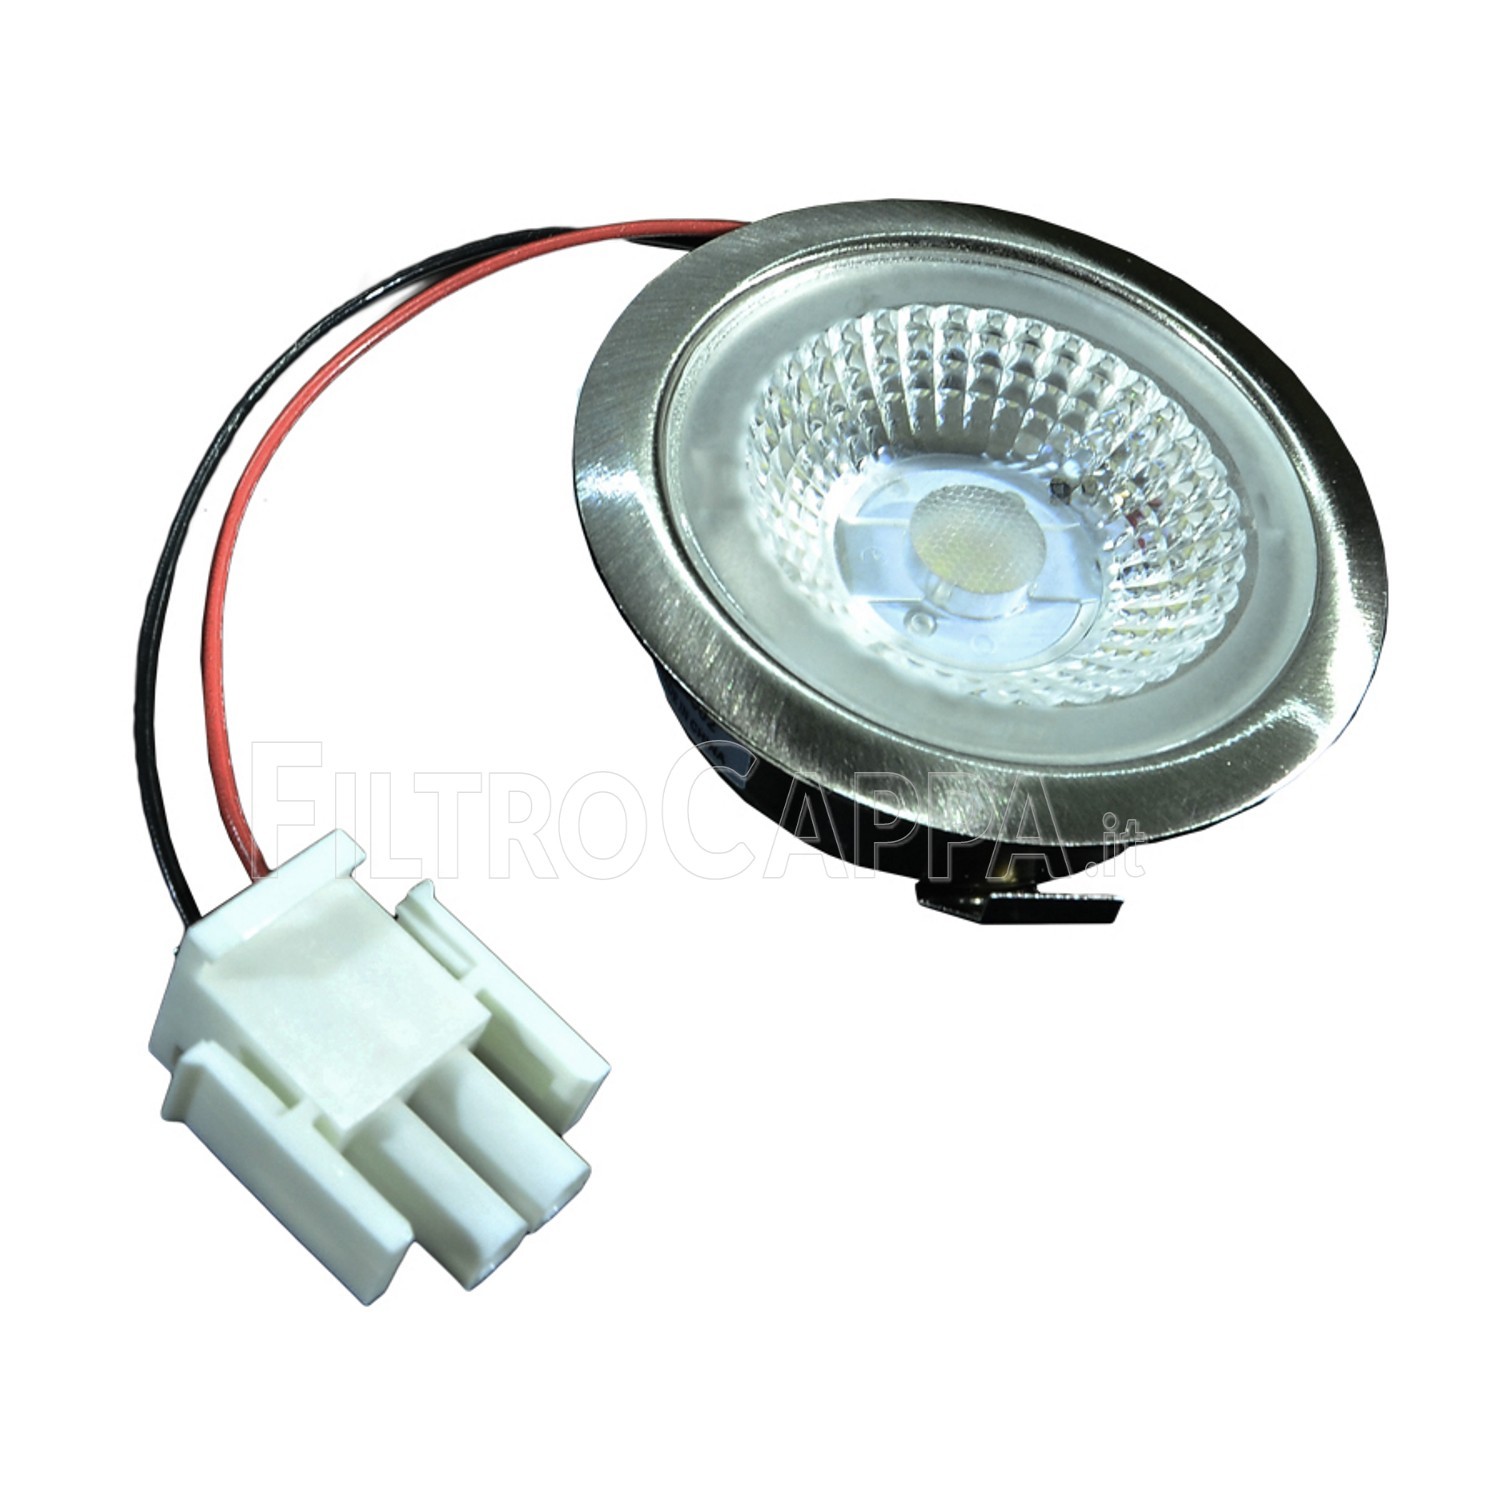 https://www.filtrocappa.it/2318-thickbox_default/led-leuchte-licht-lampe-12-volt-11-watt-4000k-durchmesser-65-cm-faber-smeg-1330456642.jpg